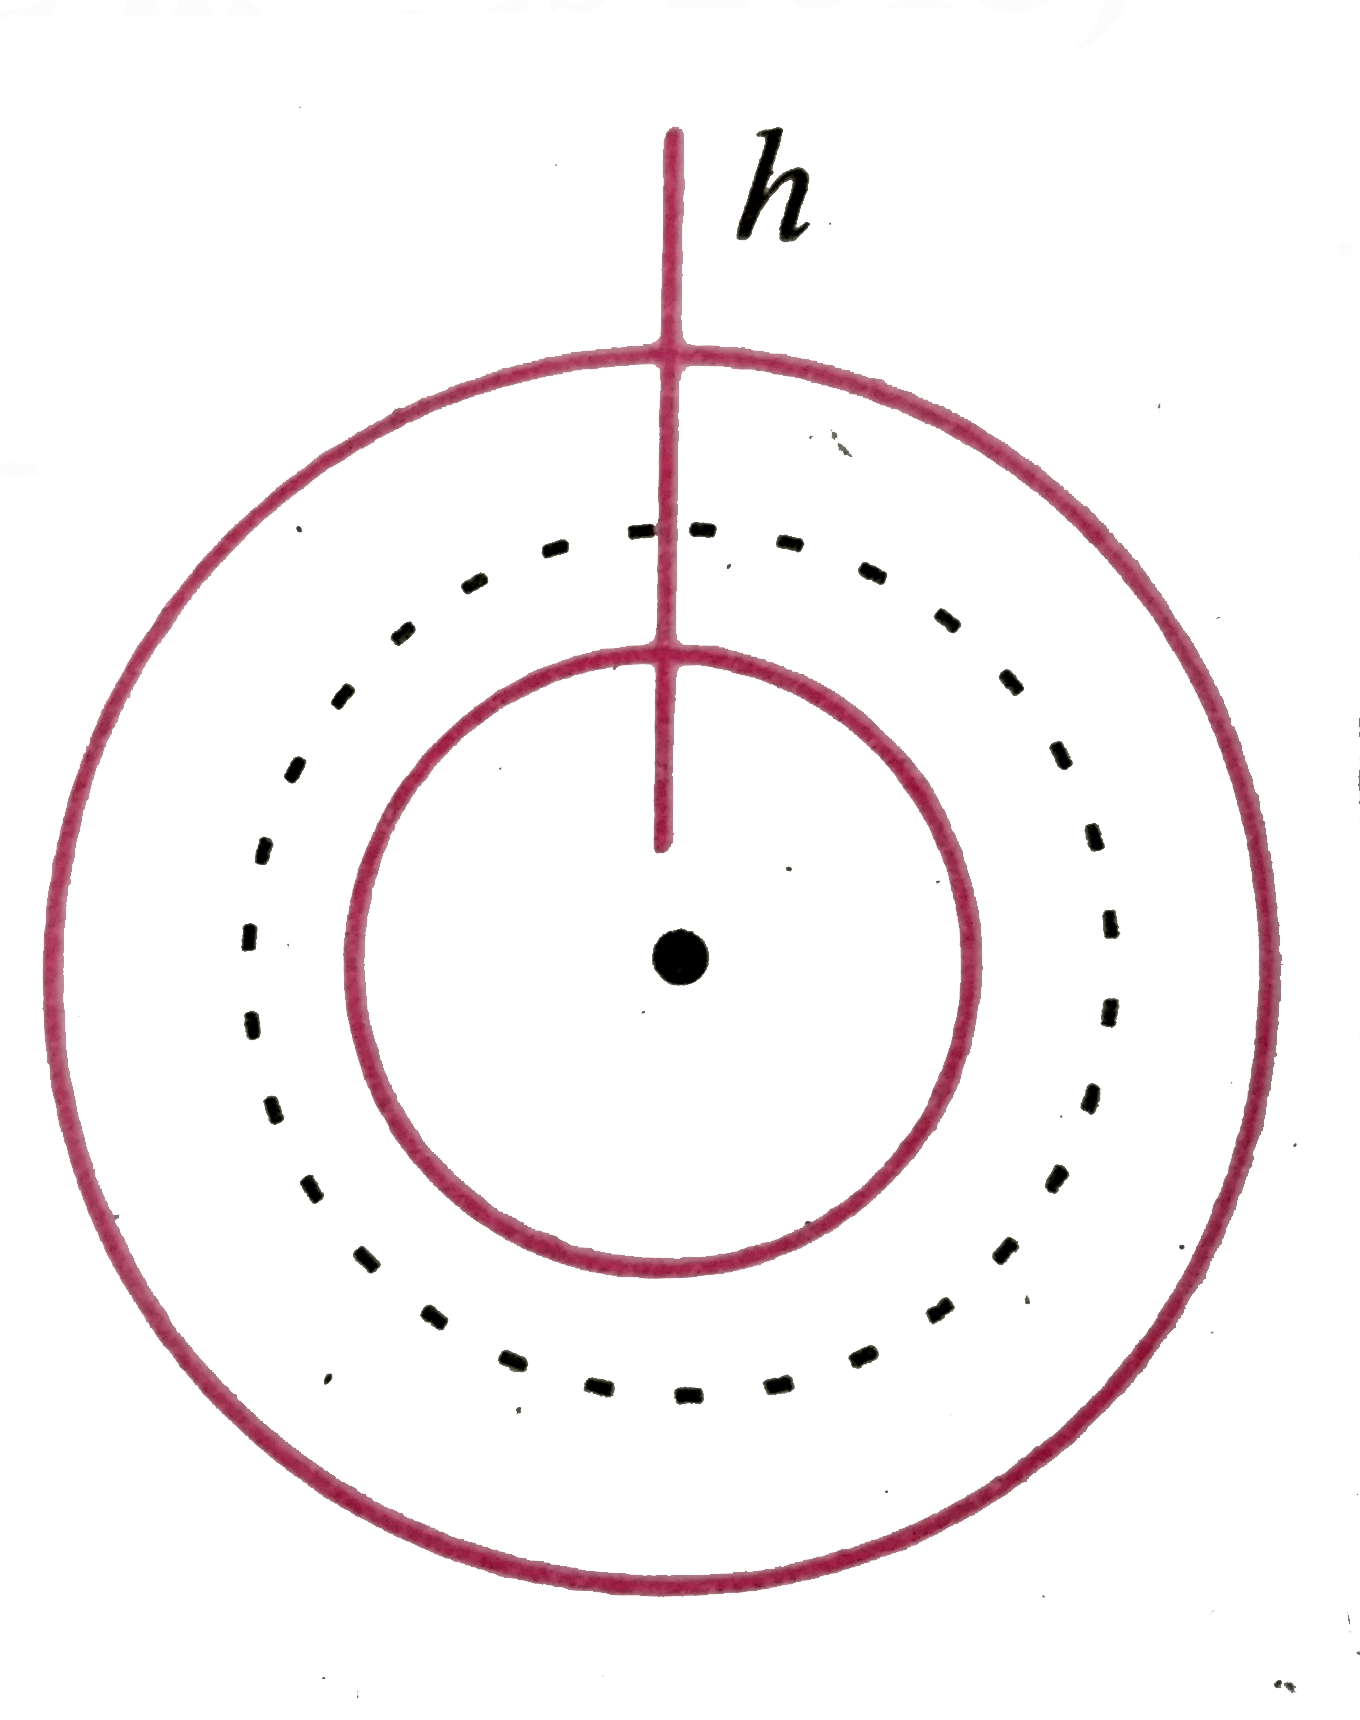 एक पतलीb = 2a  की चकती में a त्रिज्या का सकेंद्री छिद्र किया गया। एकसमान आवेश घनत्व sigma है। केंद्र से h ऊंचाई पर विद्युत क्षेत्र (h lt lt a) का मान होगा -